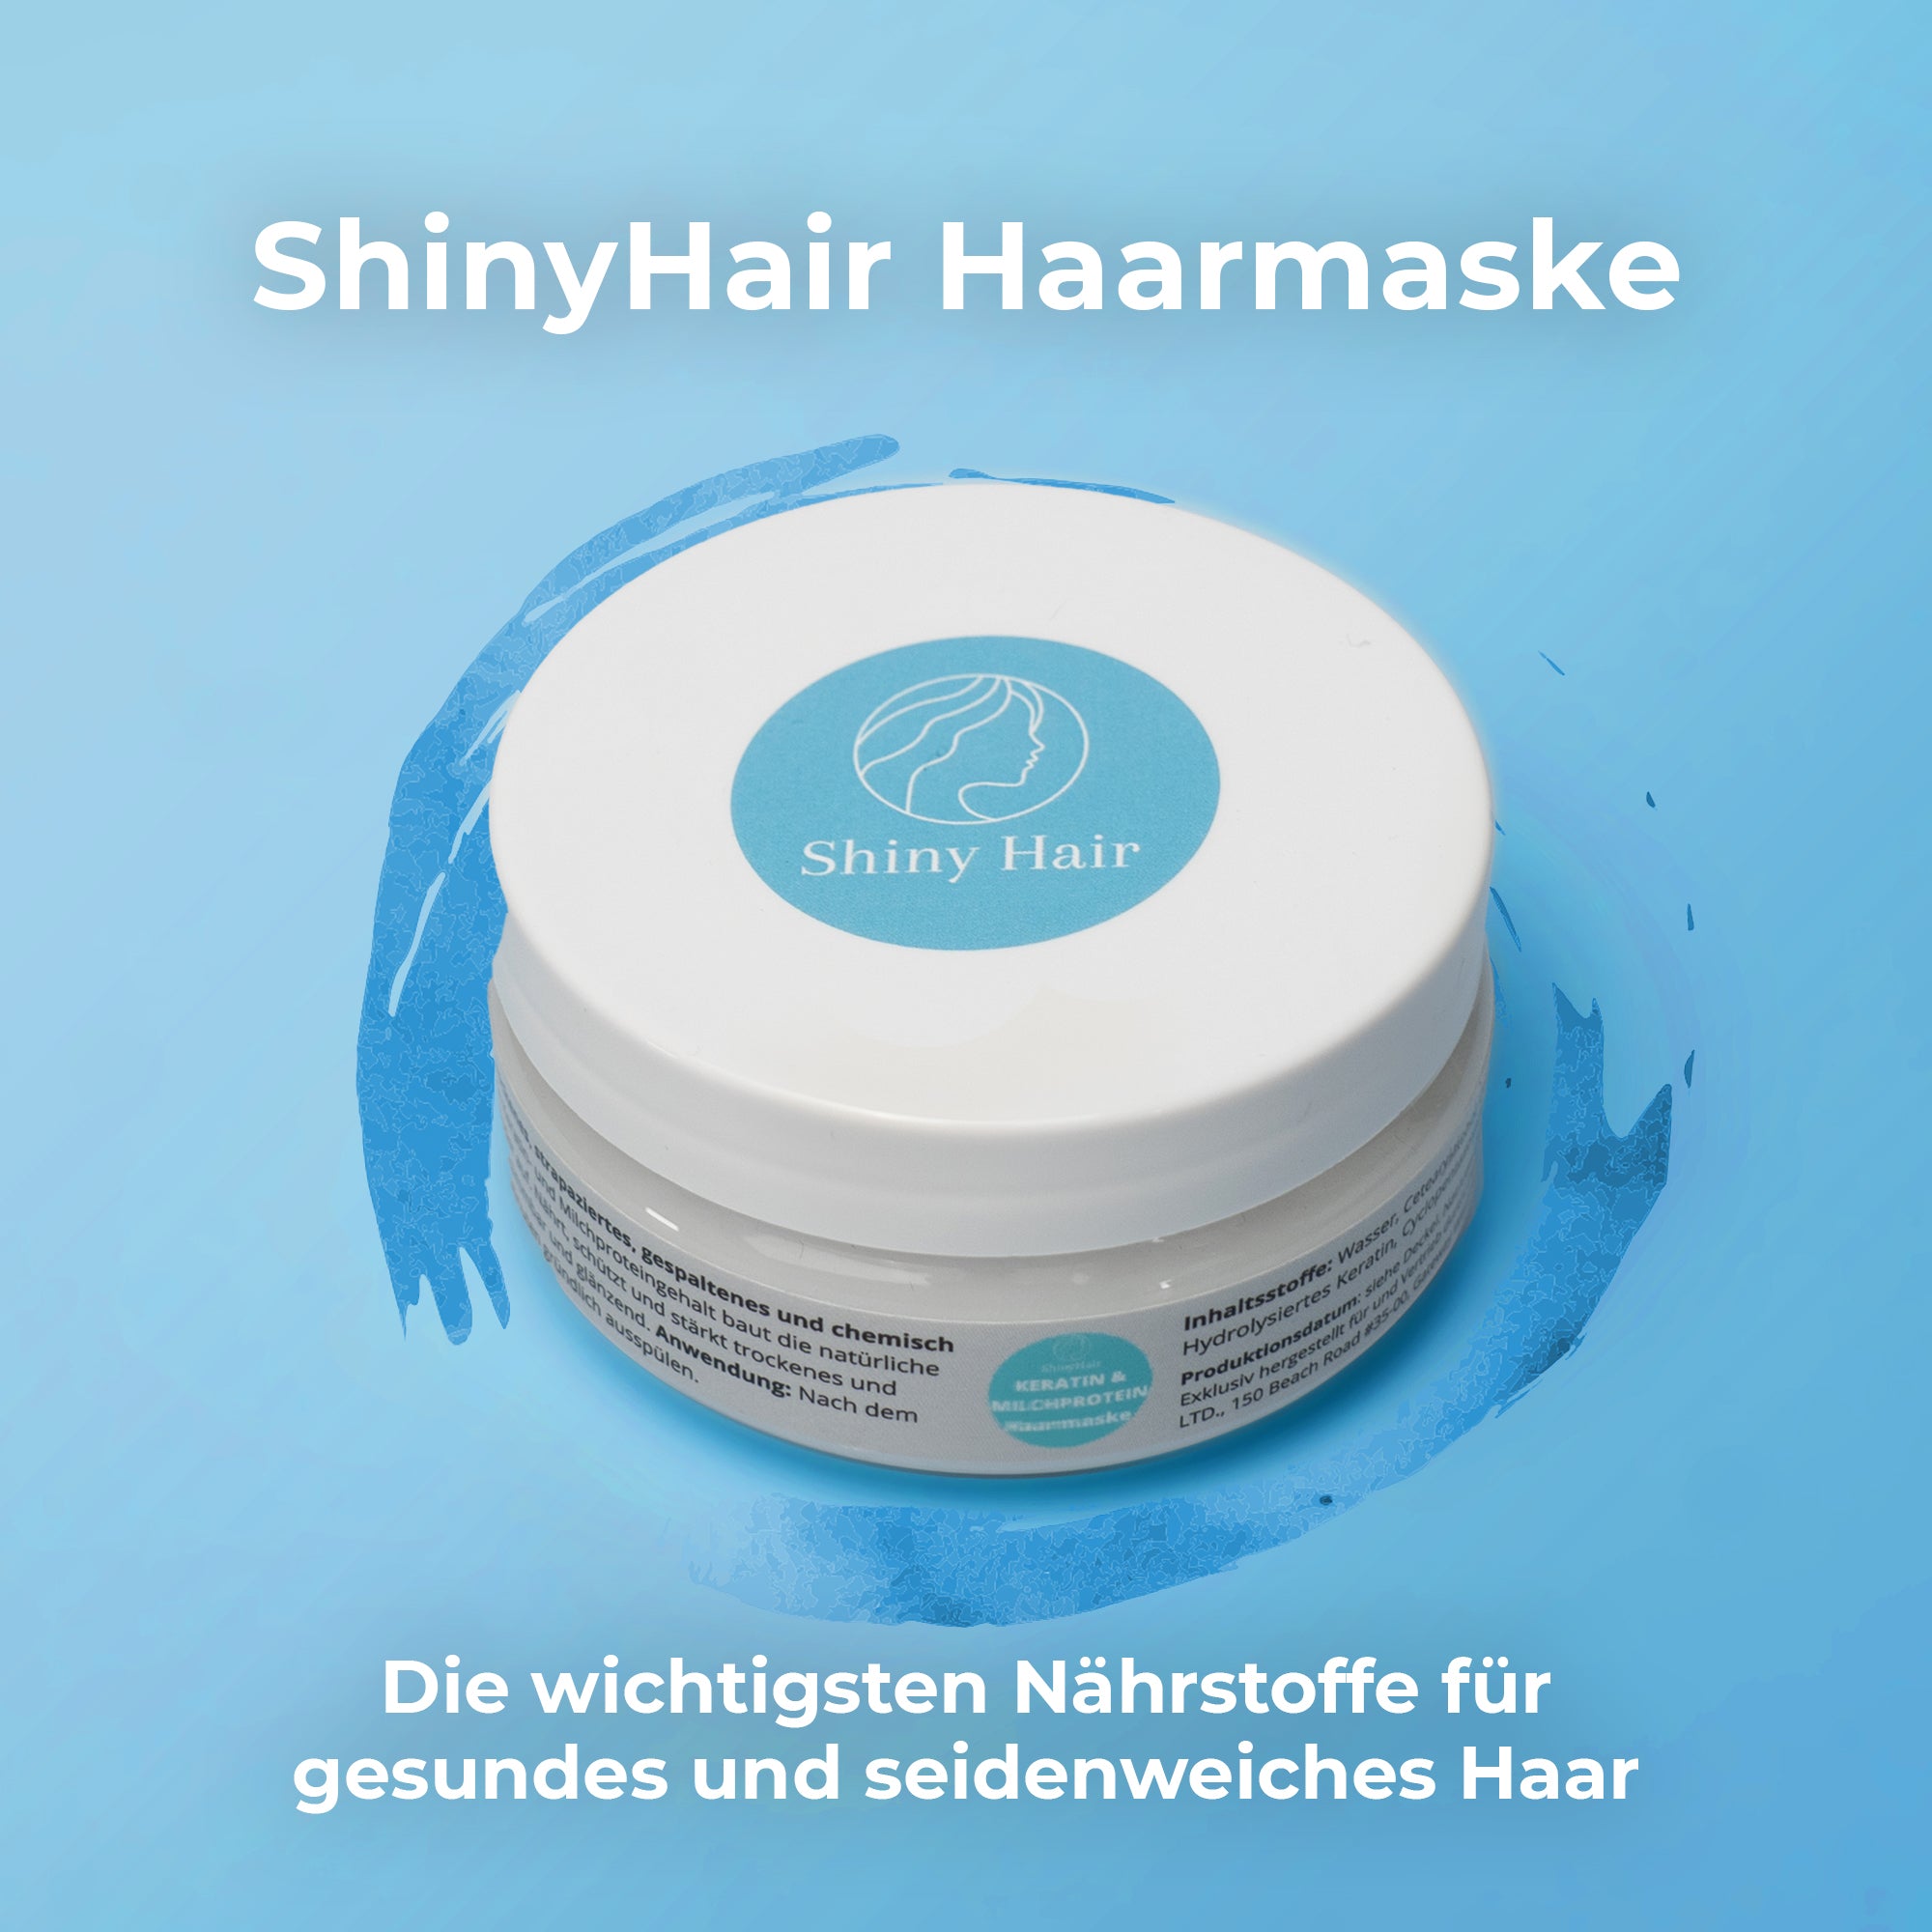 ShinyHair hair mask | for silky straight hair